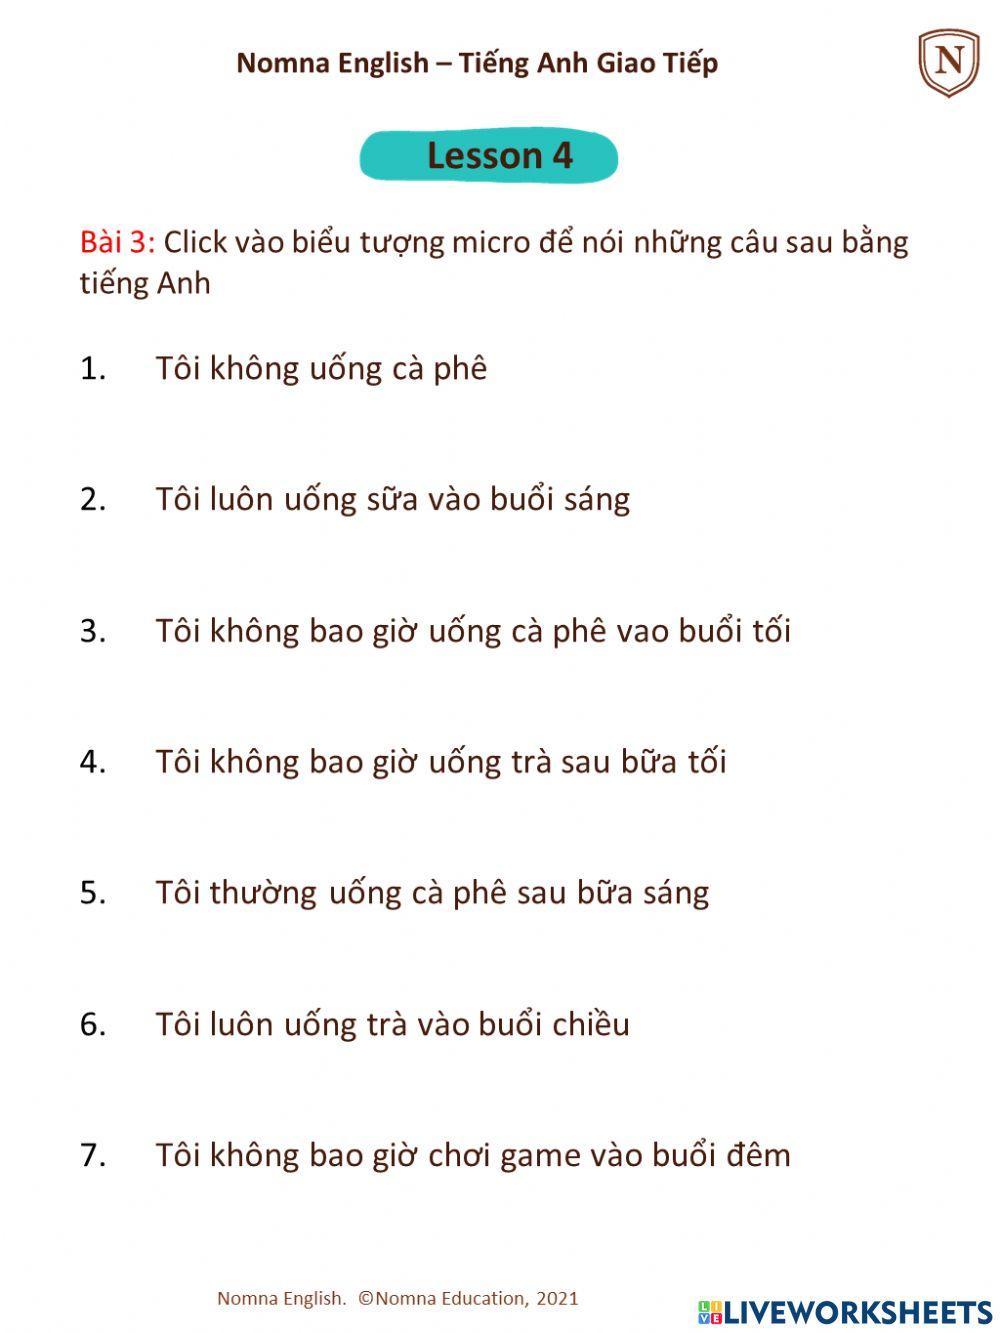 Nomna English - Lesson 4 - Bai tap 3